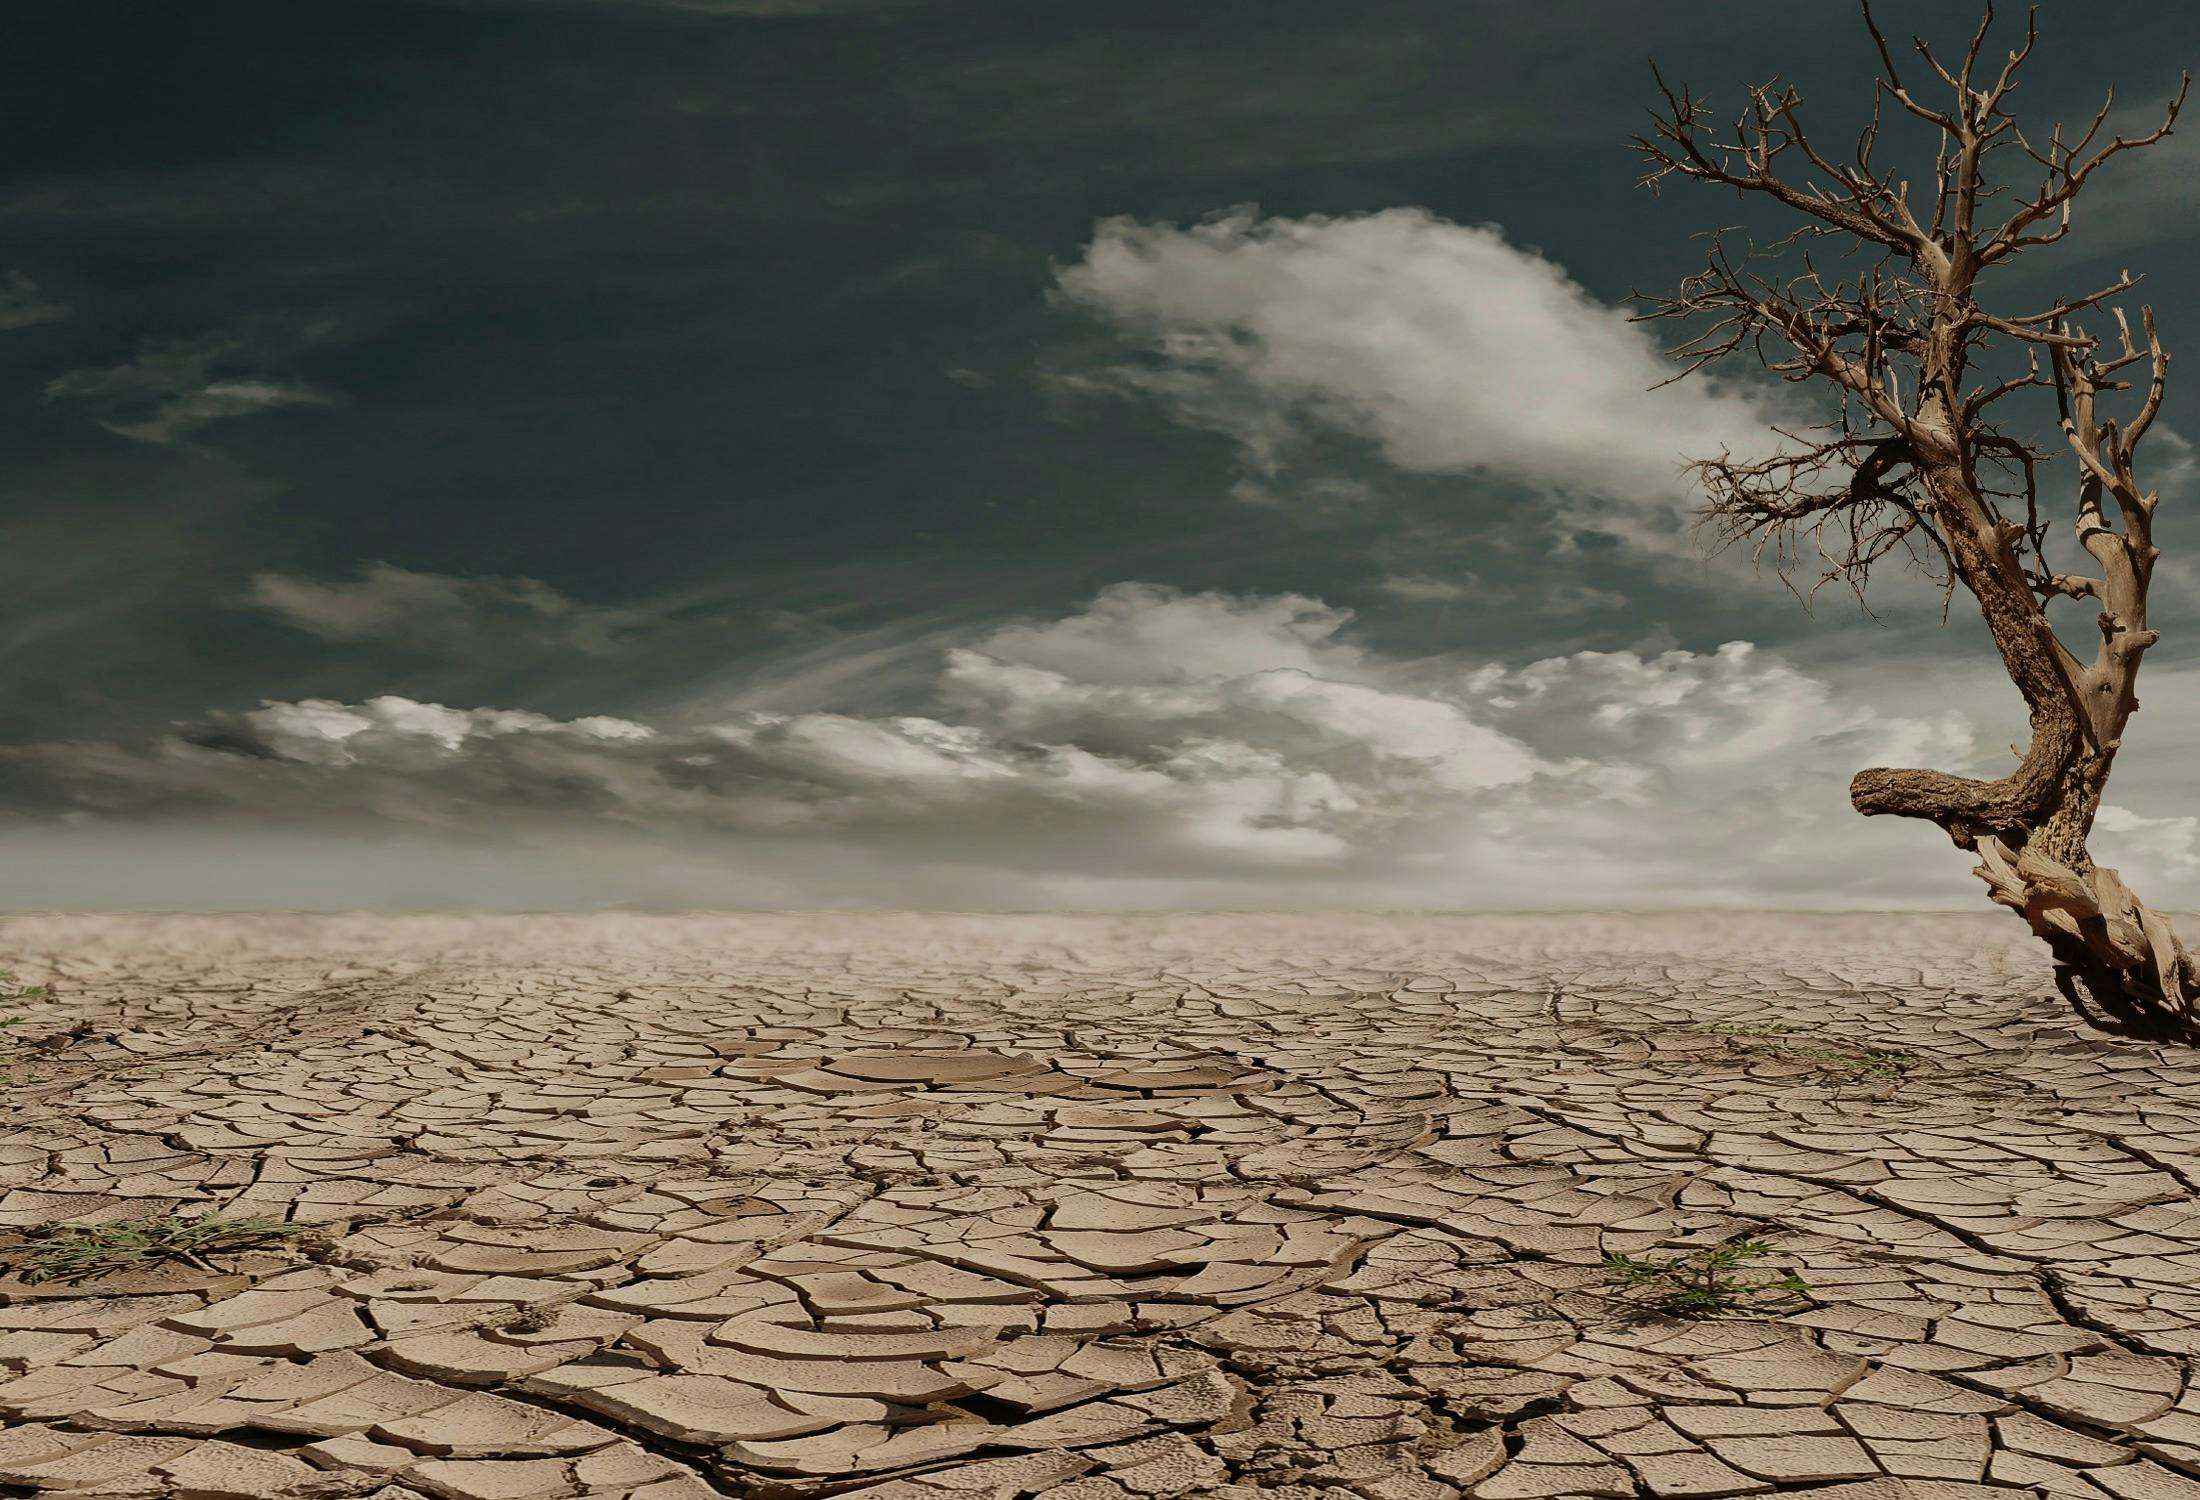 desert drought dehydrated clay soil 60013.jpeg?cs=srgb&dl=pexels pixabay 60013